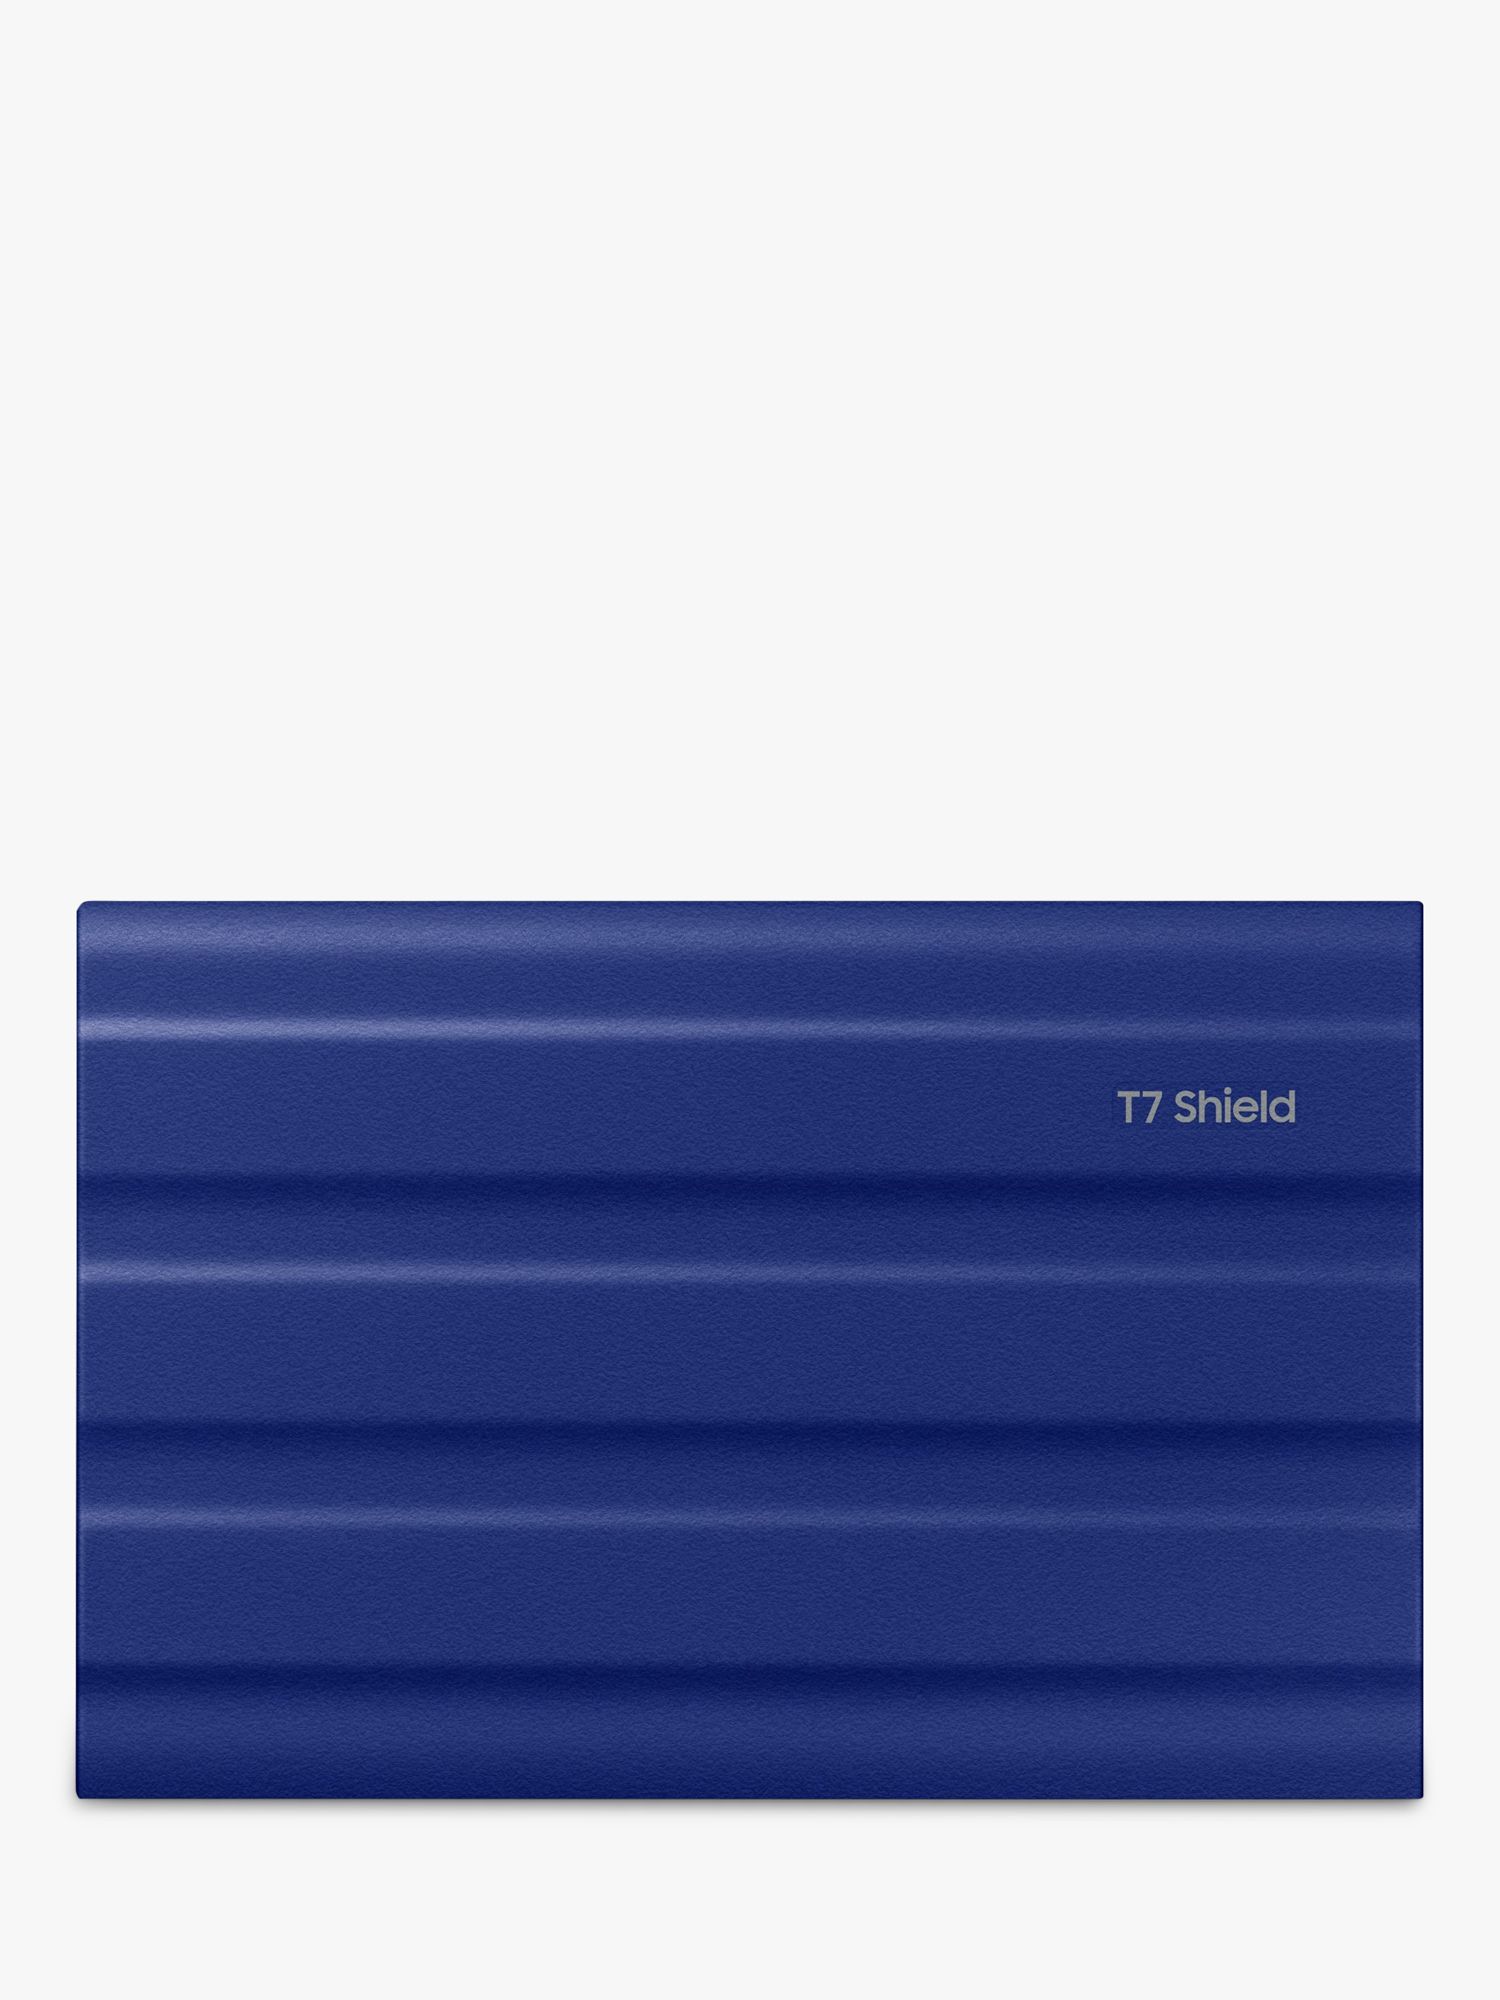 Samsung T7 Shield USB 3.2 Gen 2 Portable SSD Hard Drive, 2TB, Blue